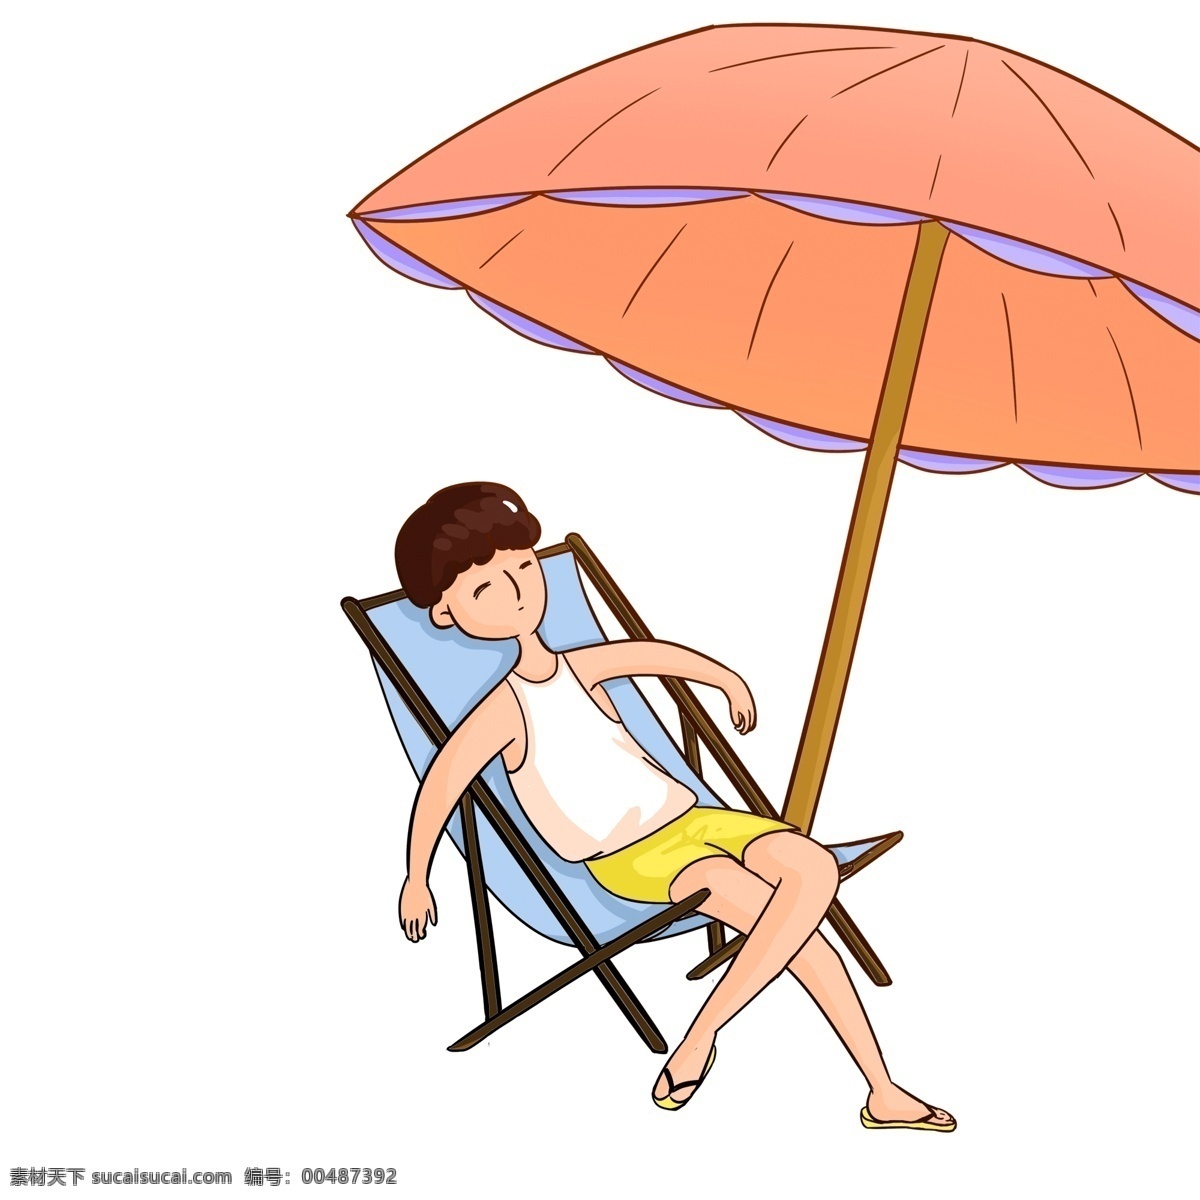 夏天 沙滩 度假 男孩 插画 彩绘 漫画 沙滩度假 躺椅 遮阳伞